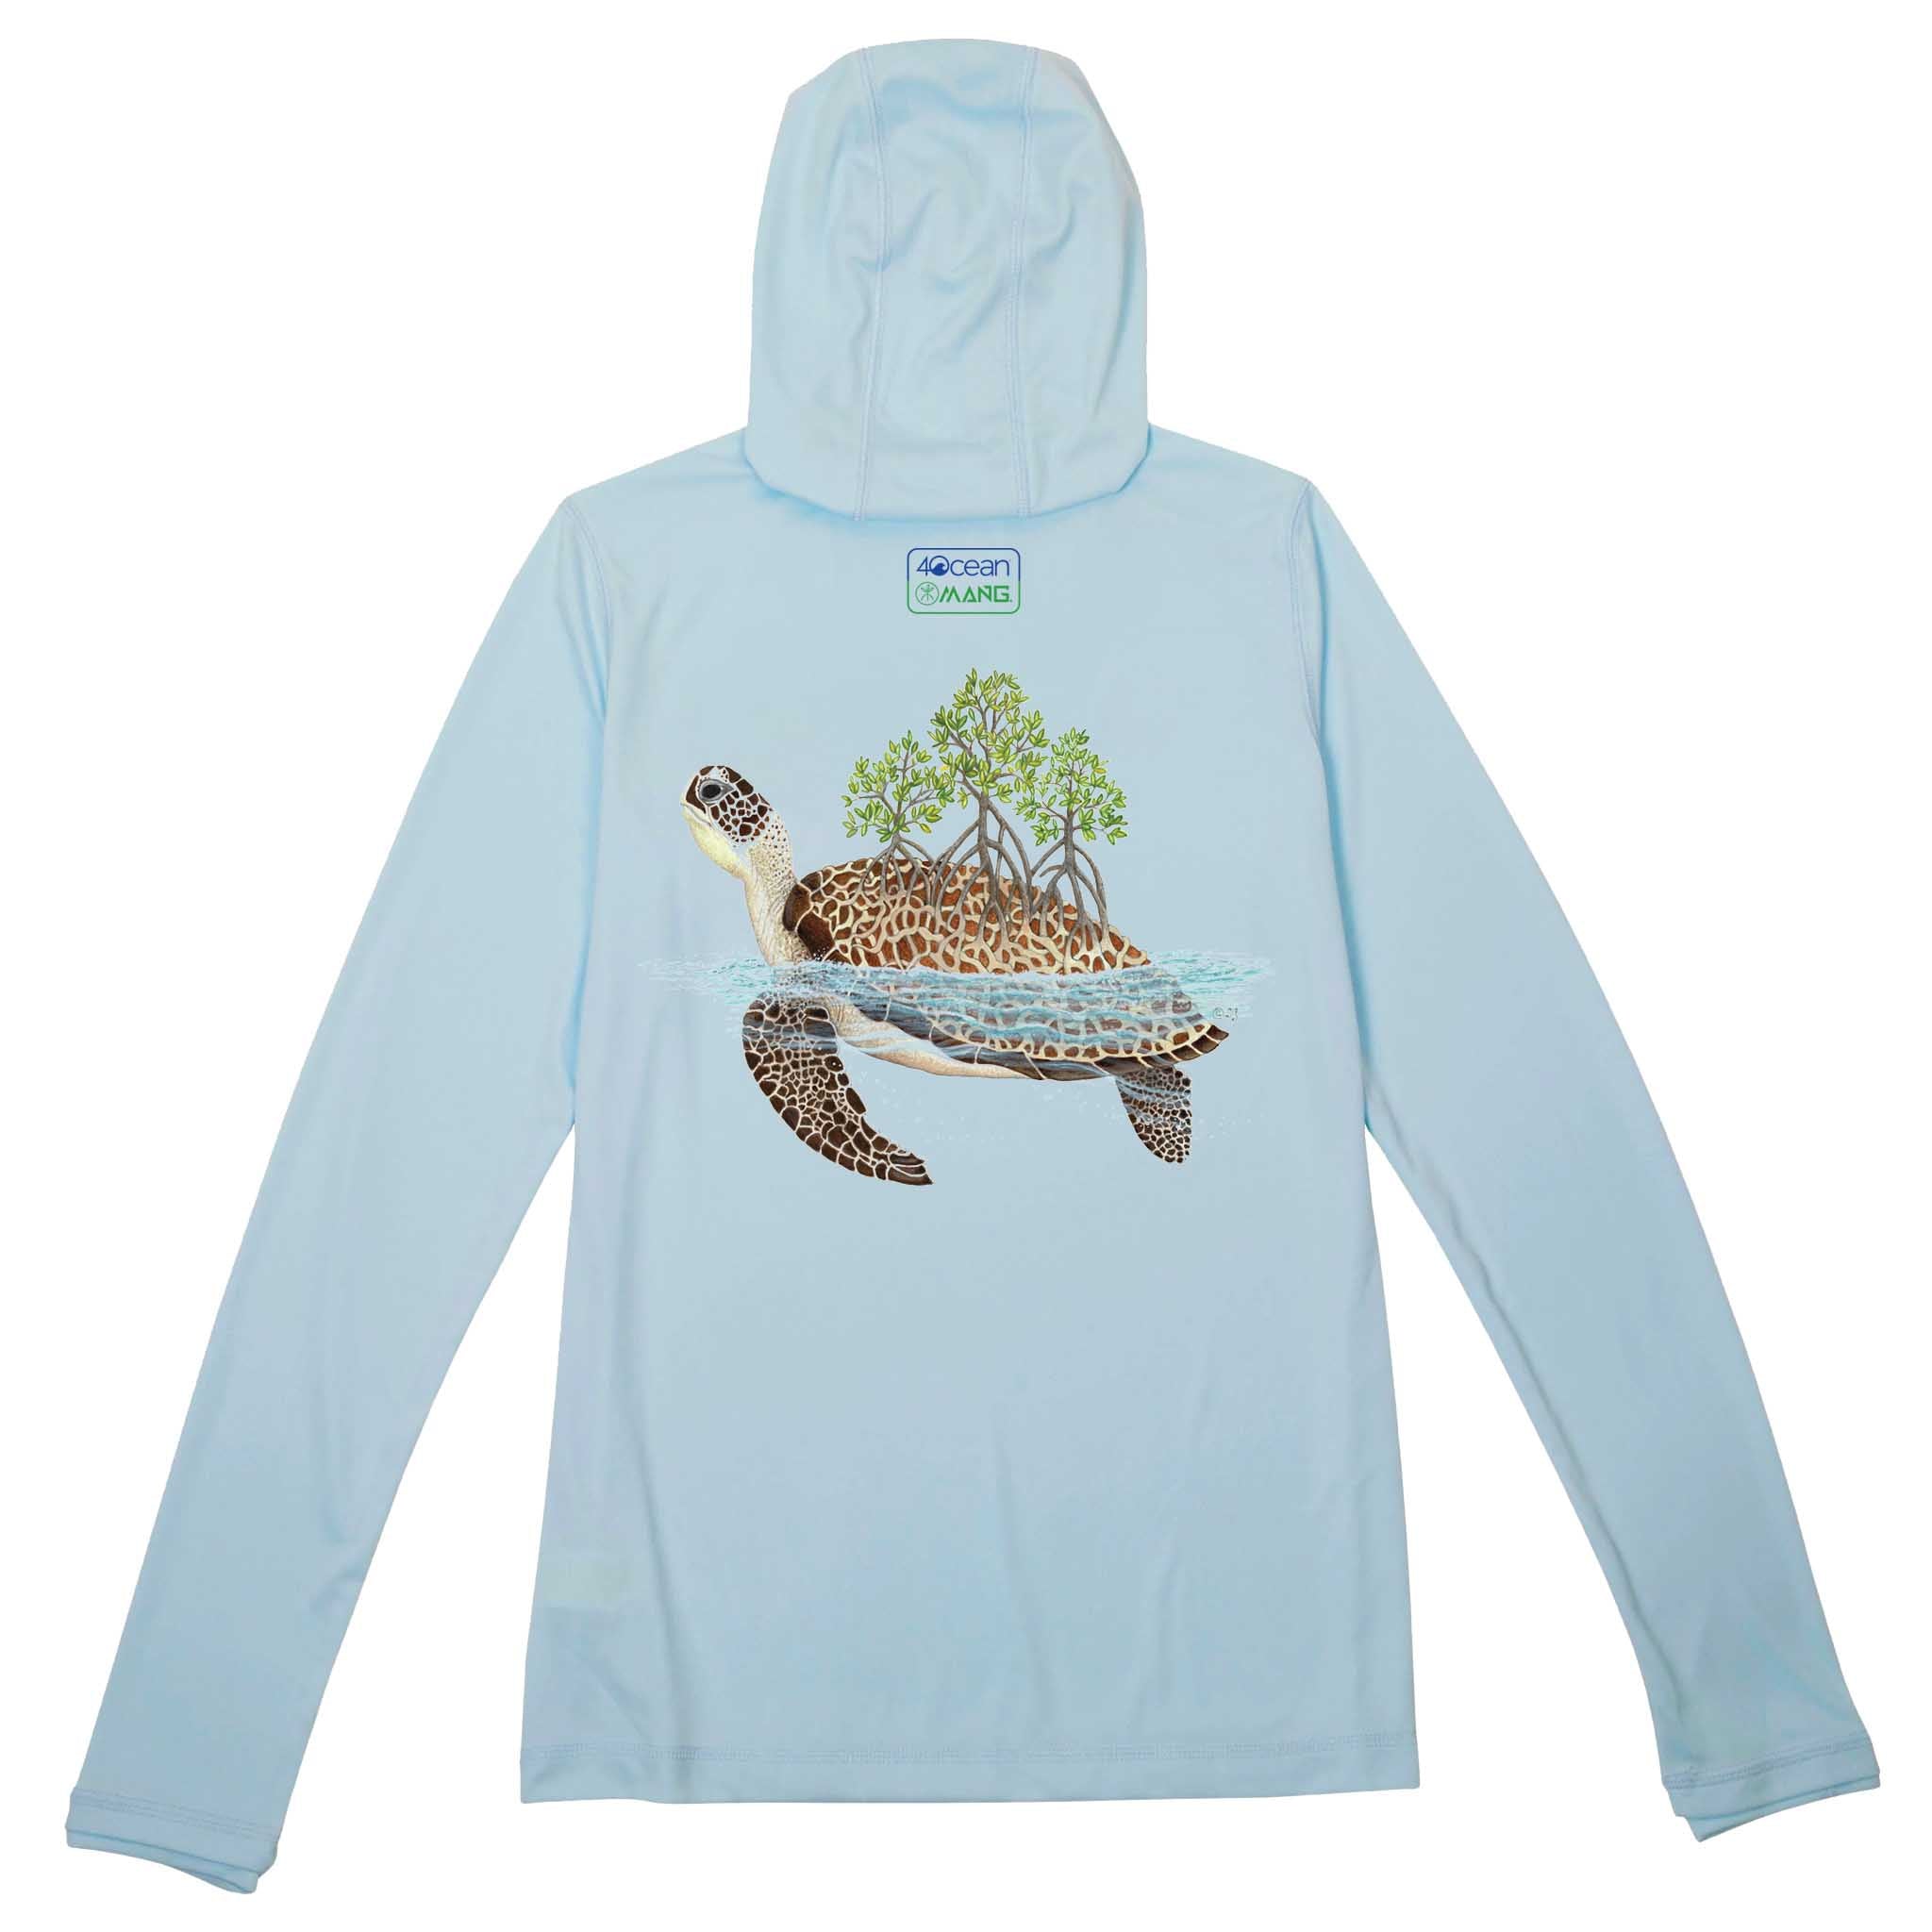 4ocean Turtle Eco Hoodie - Women's